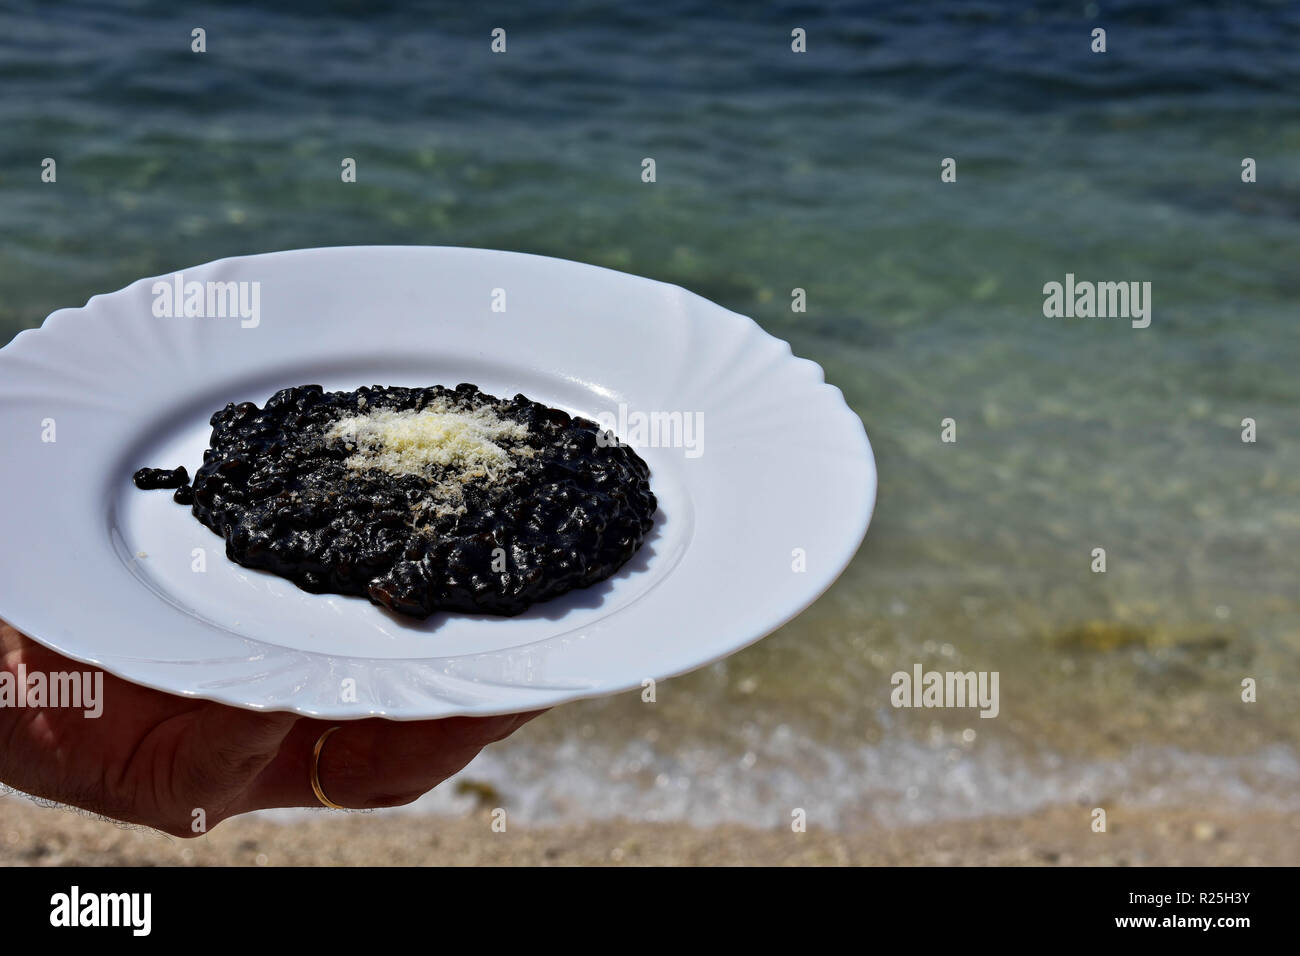 Nero deliziosi risotti serviti dal mare/ cameriere tenendo la piastra del risotto nero / cucina mediterranea Foto Stock